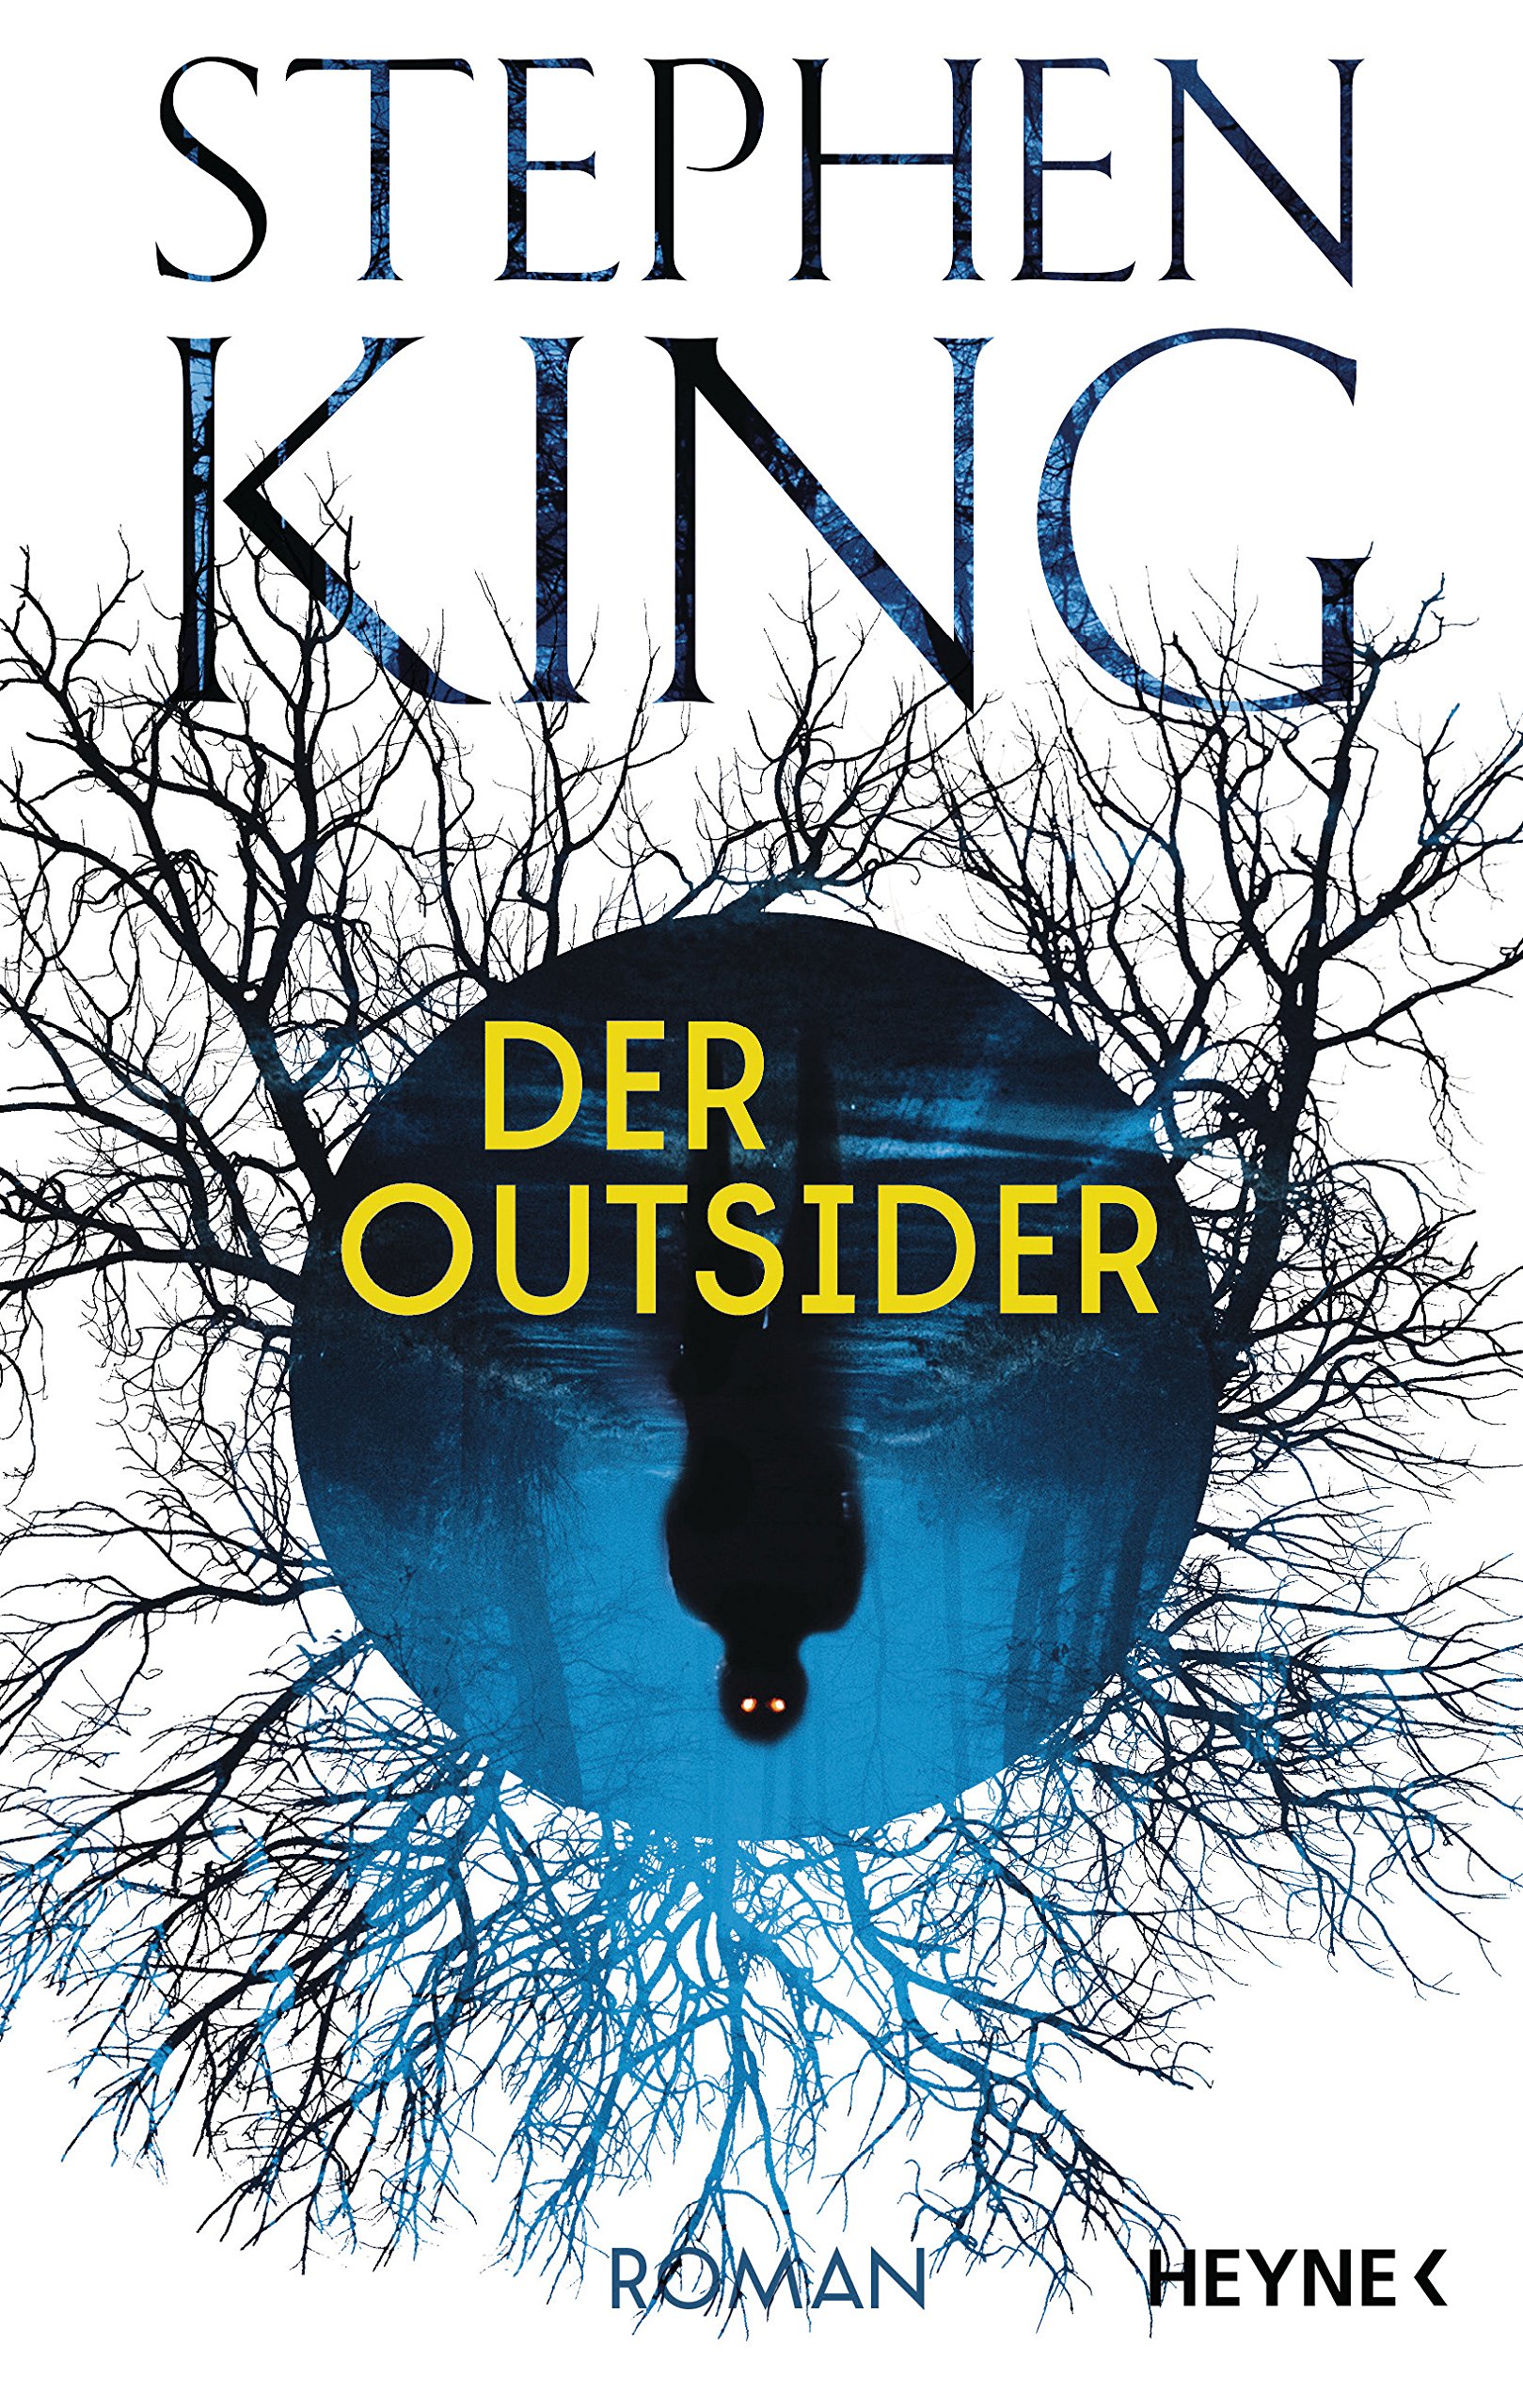 Stephen King, Der Outsider, Heyne Verlag